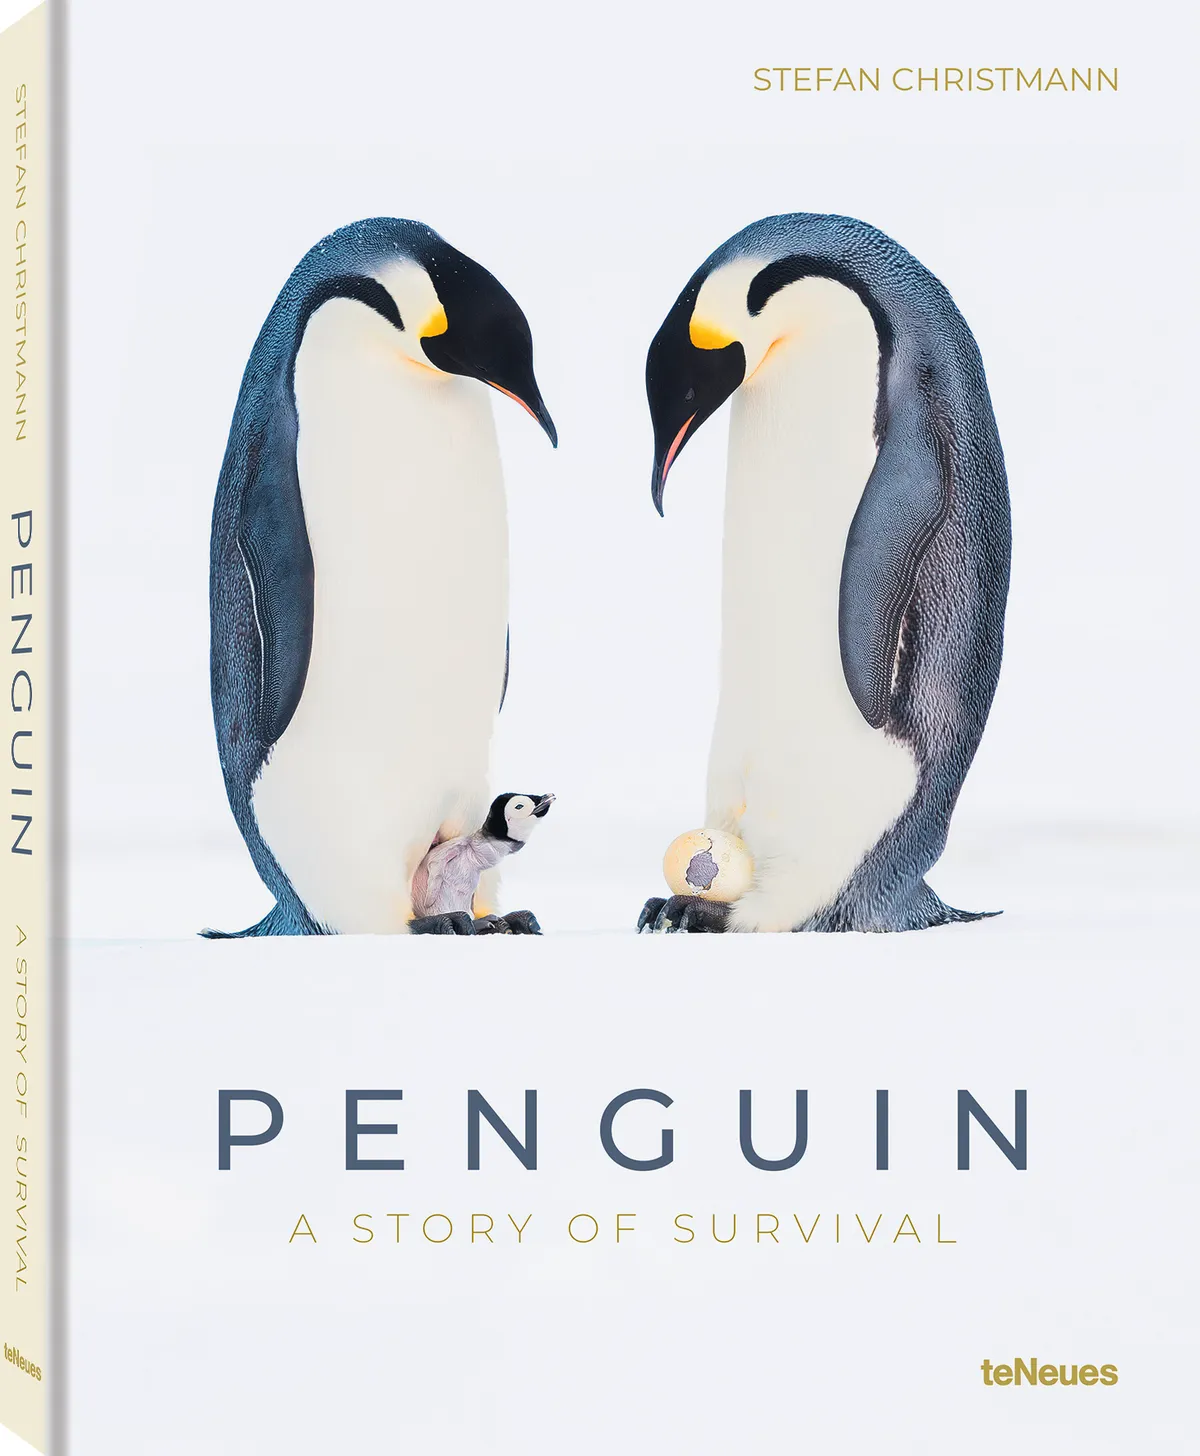 Penguin: A Story of Survival. By Stefan Chrismann